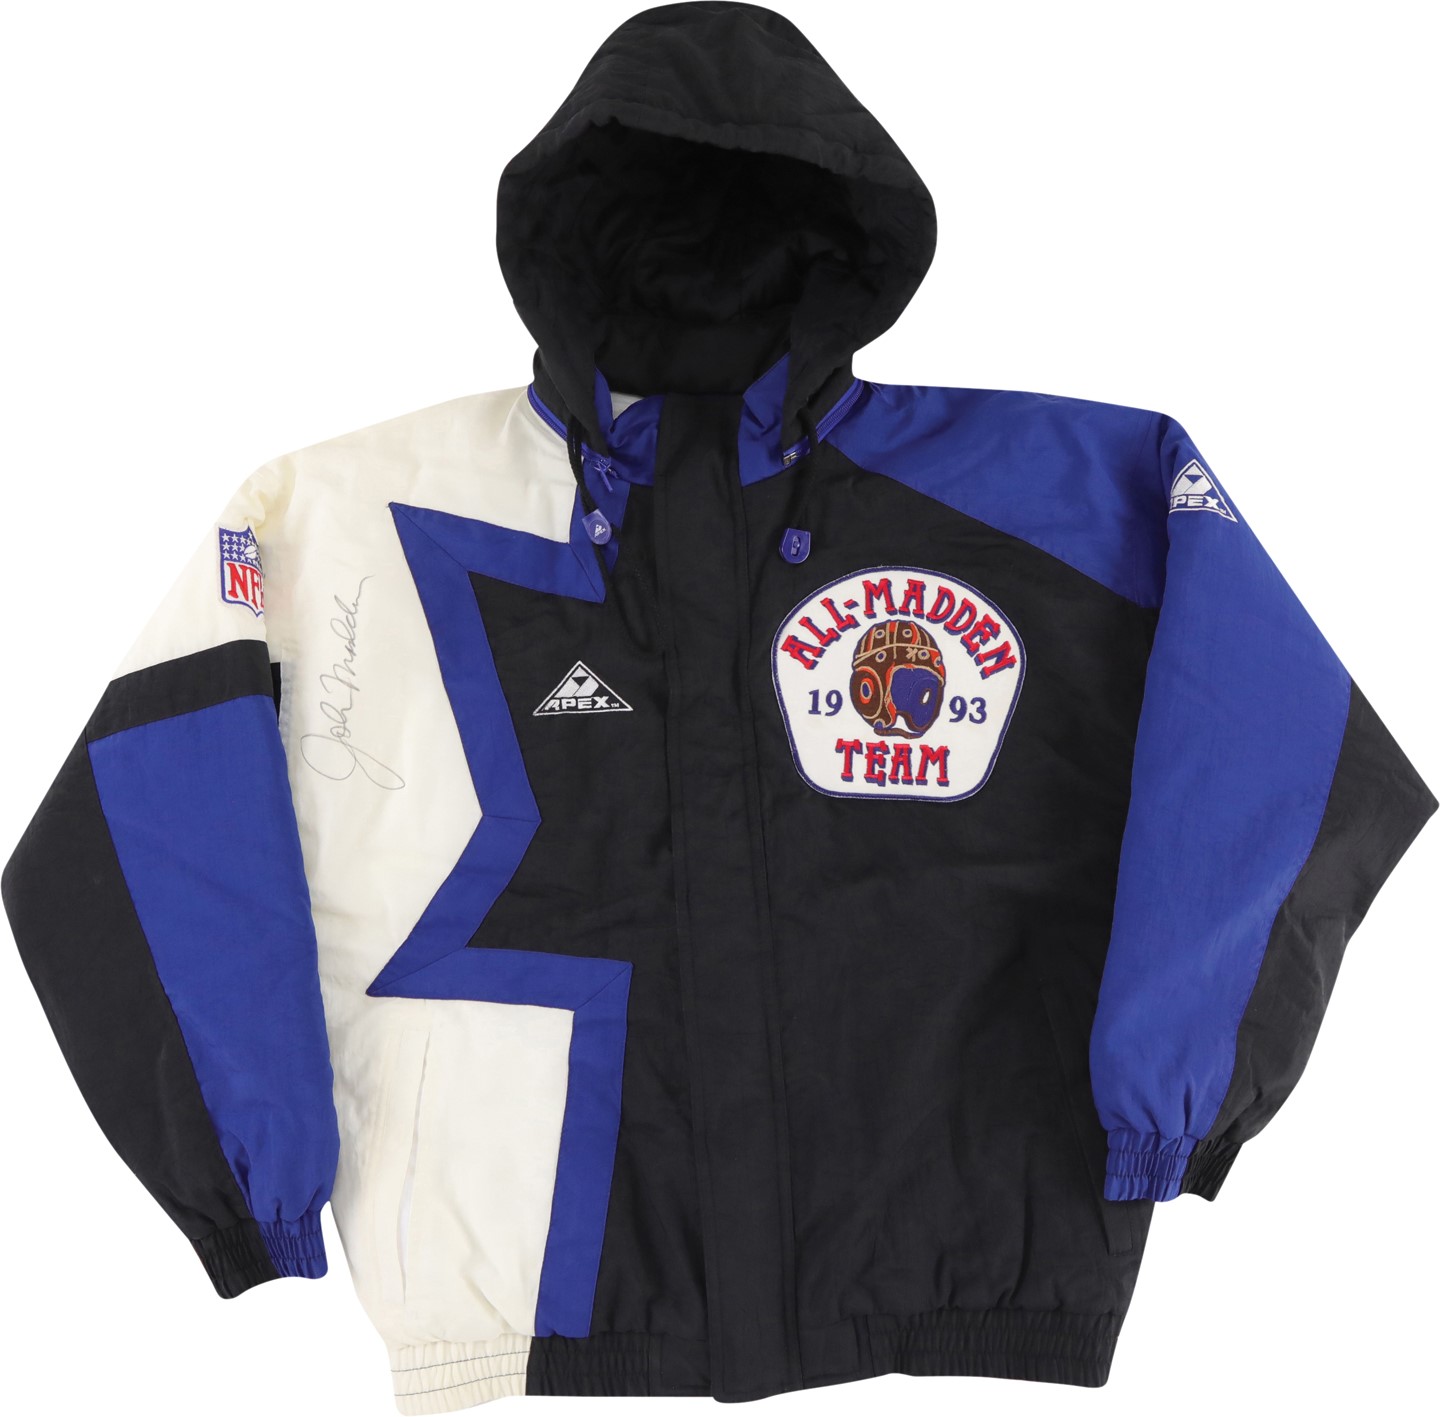 - 1993 John Madden All-Madden Team Signed Jacket